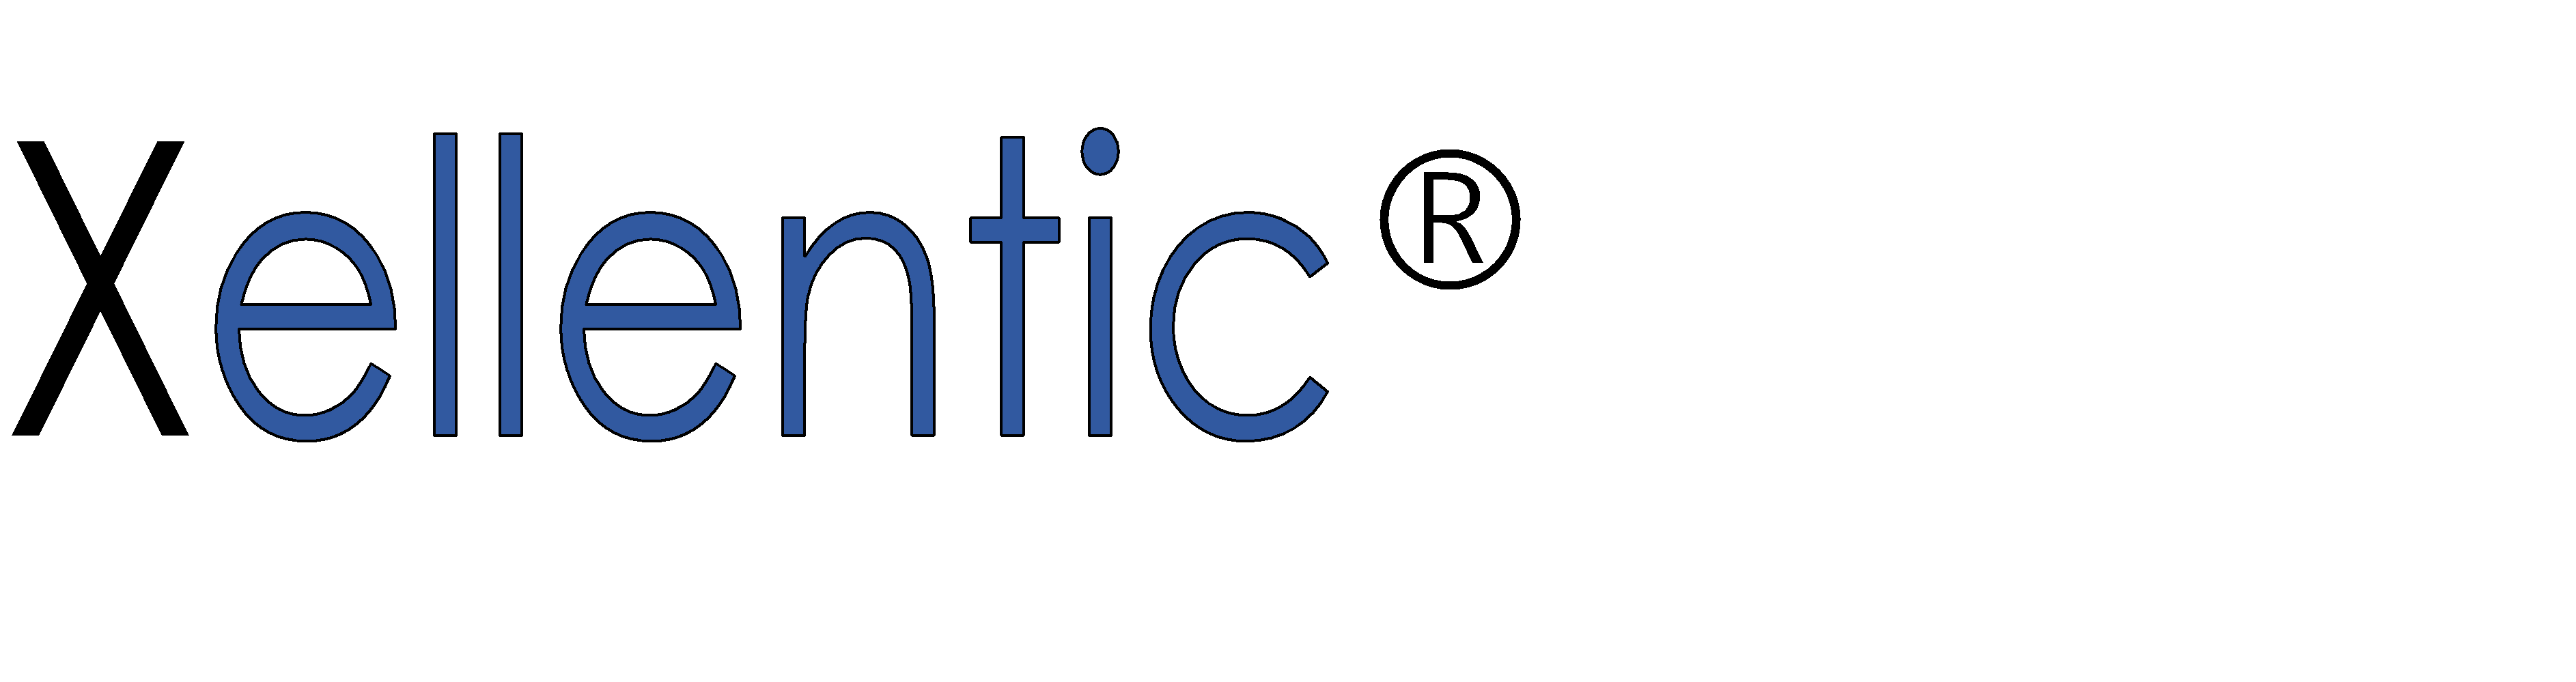 Logo der Marke Xellentic®